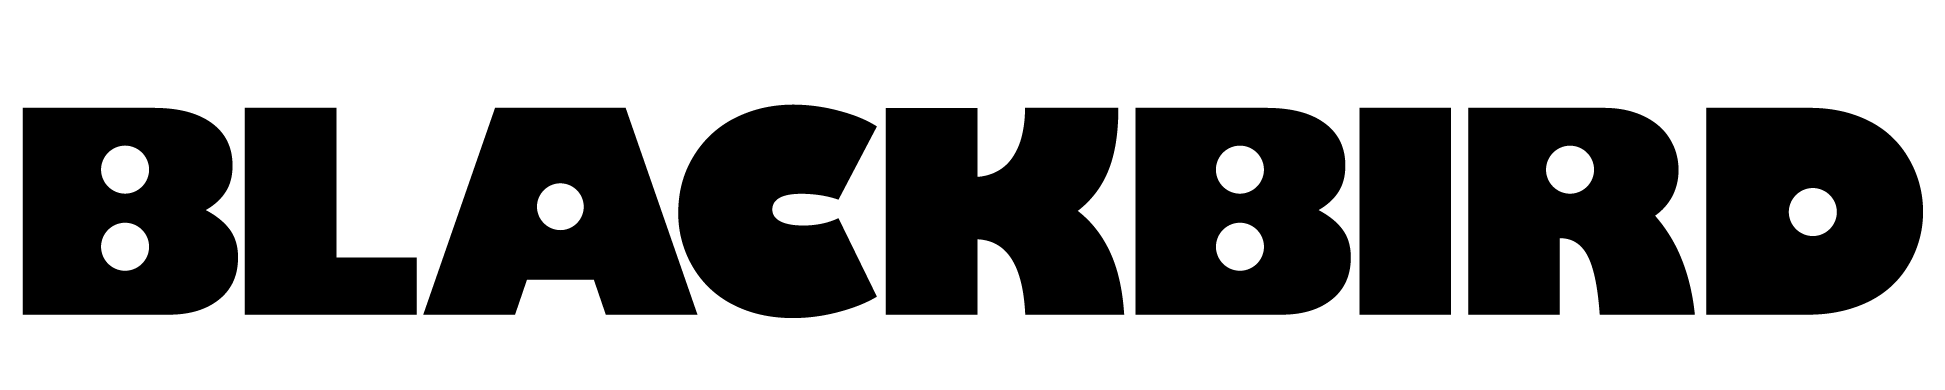 Blackbird 徽标